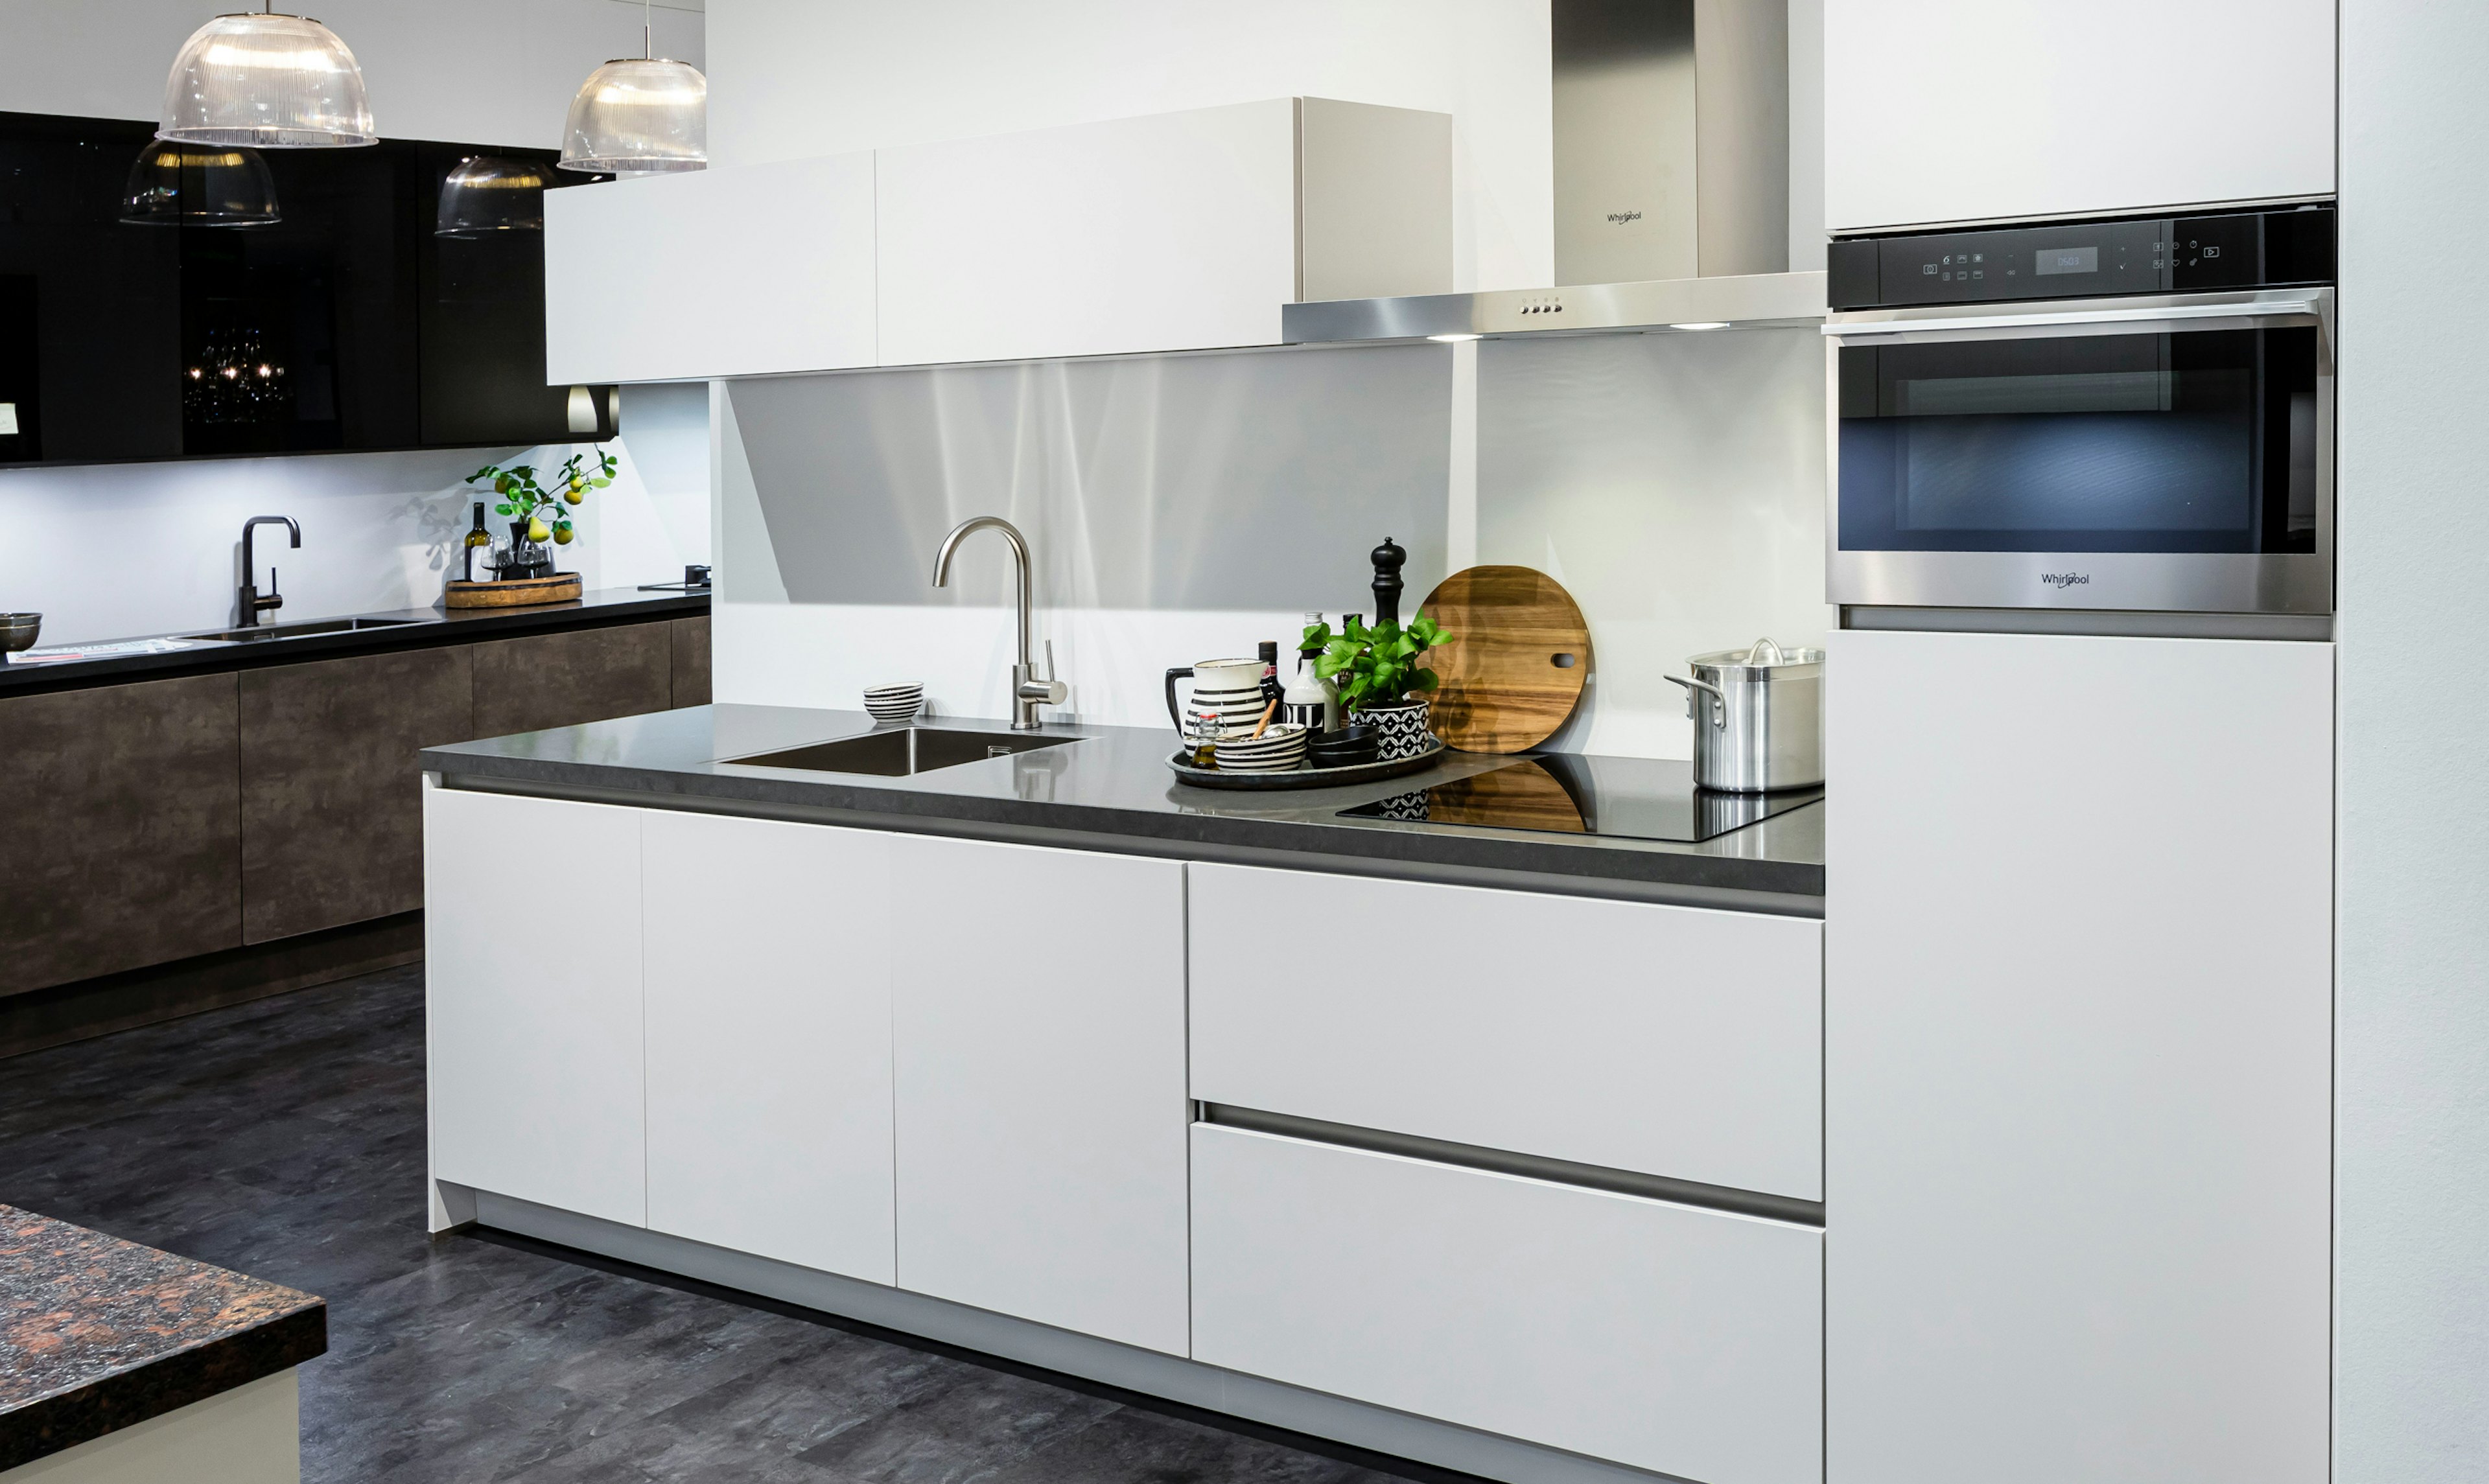 slecht Elastisch inschakelen Kleine keukens: voor beperkte kleine ruimtes | Bemmel & Kroon